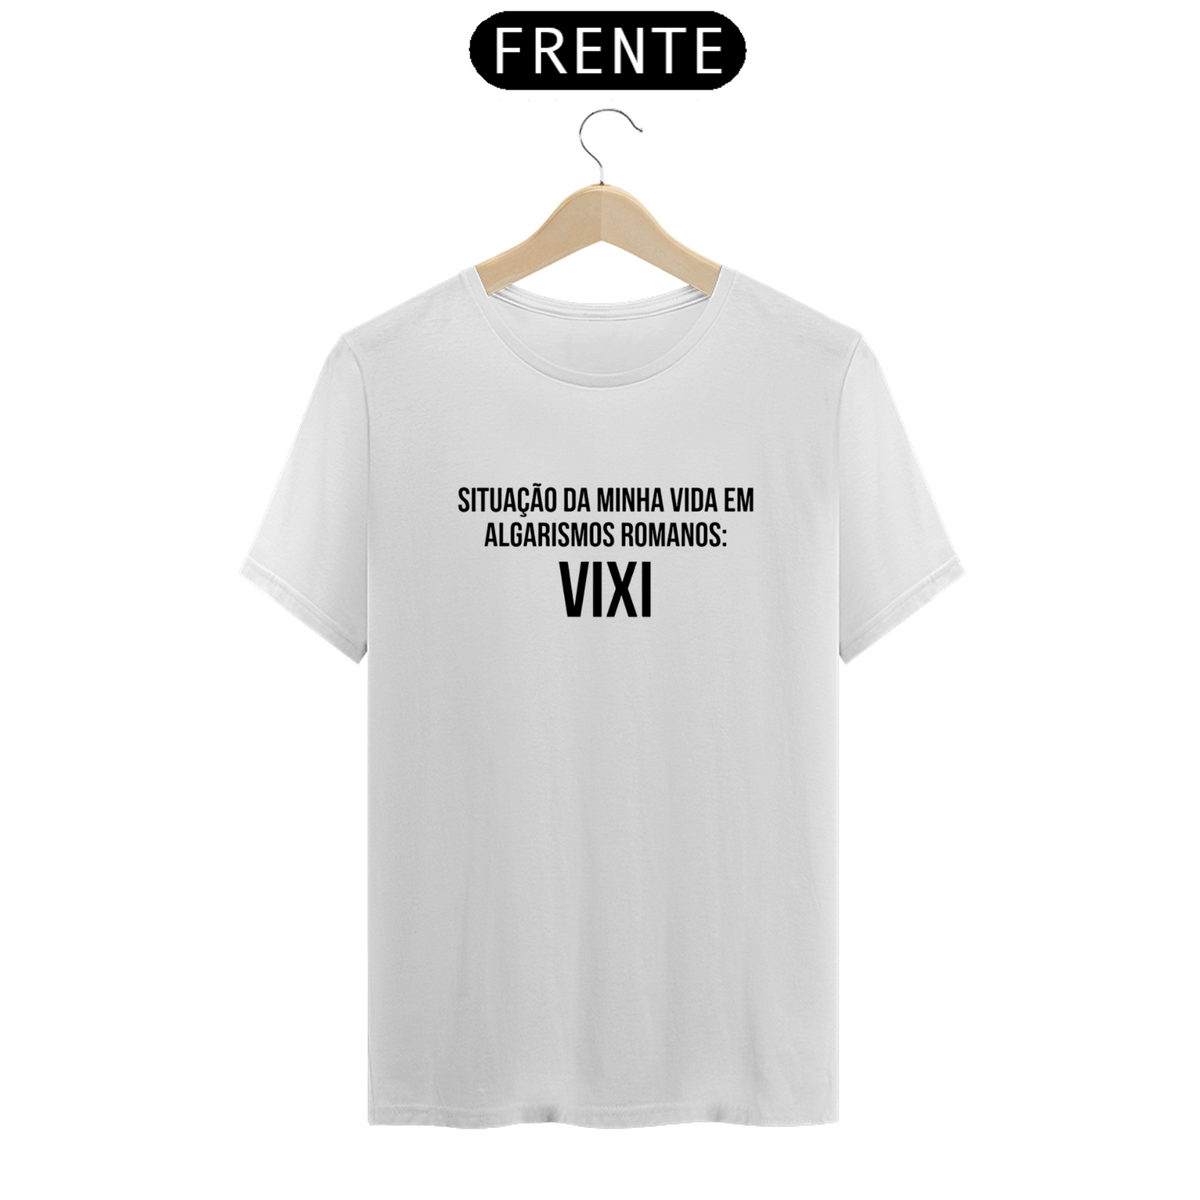 Nome do produto: Camiseta Situação da minha vida em algarismos romanos VIXI